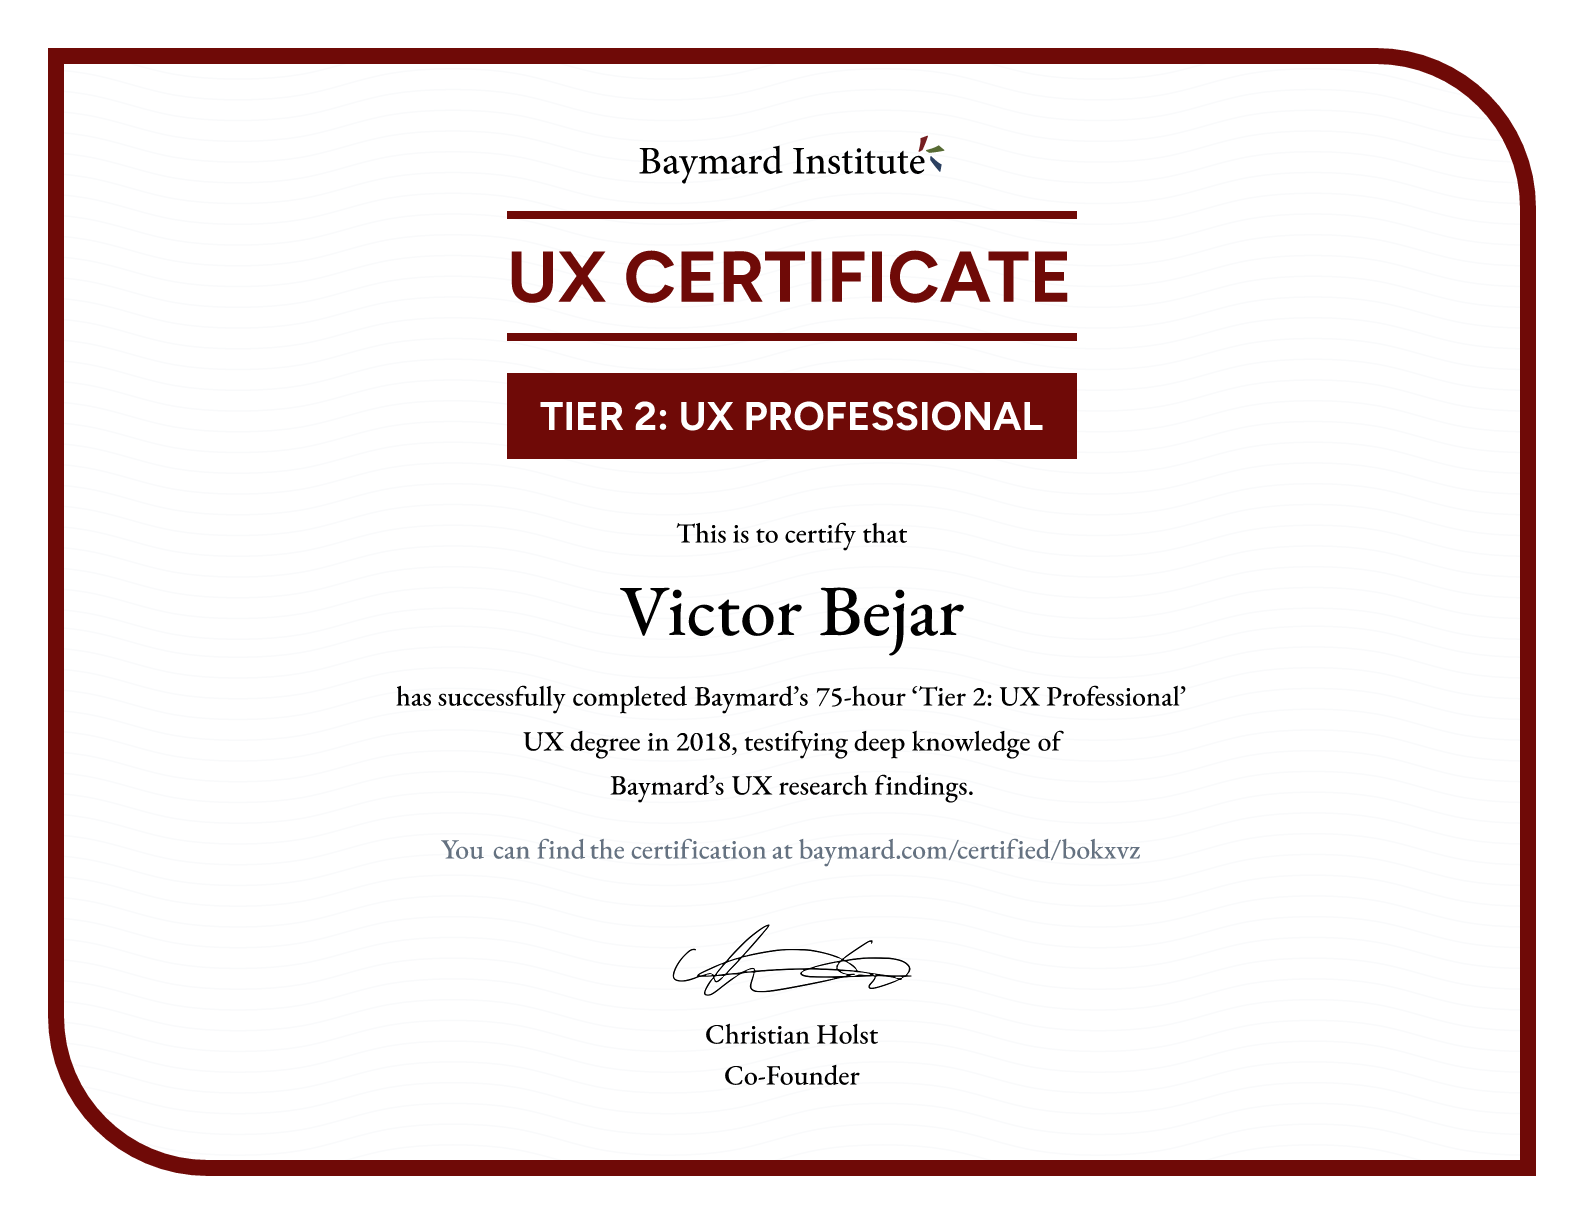 Victor Bejar’s certificate